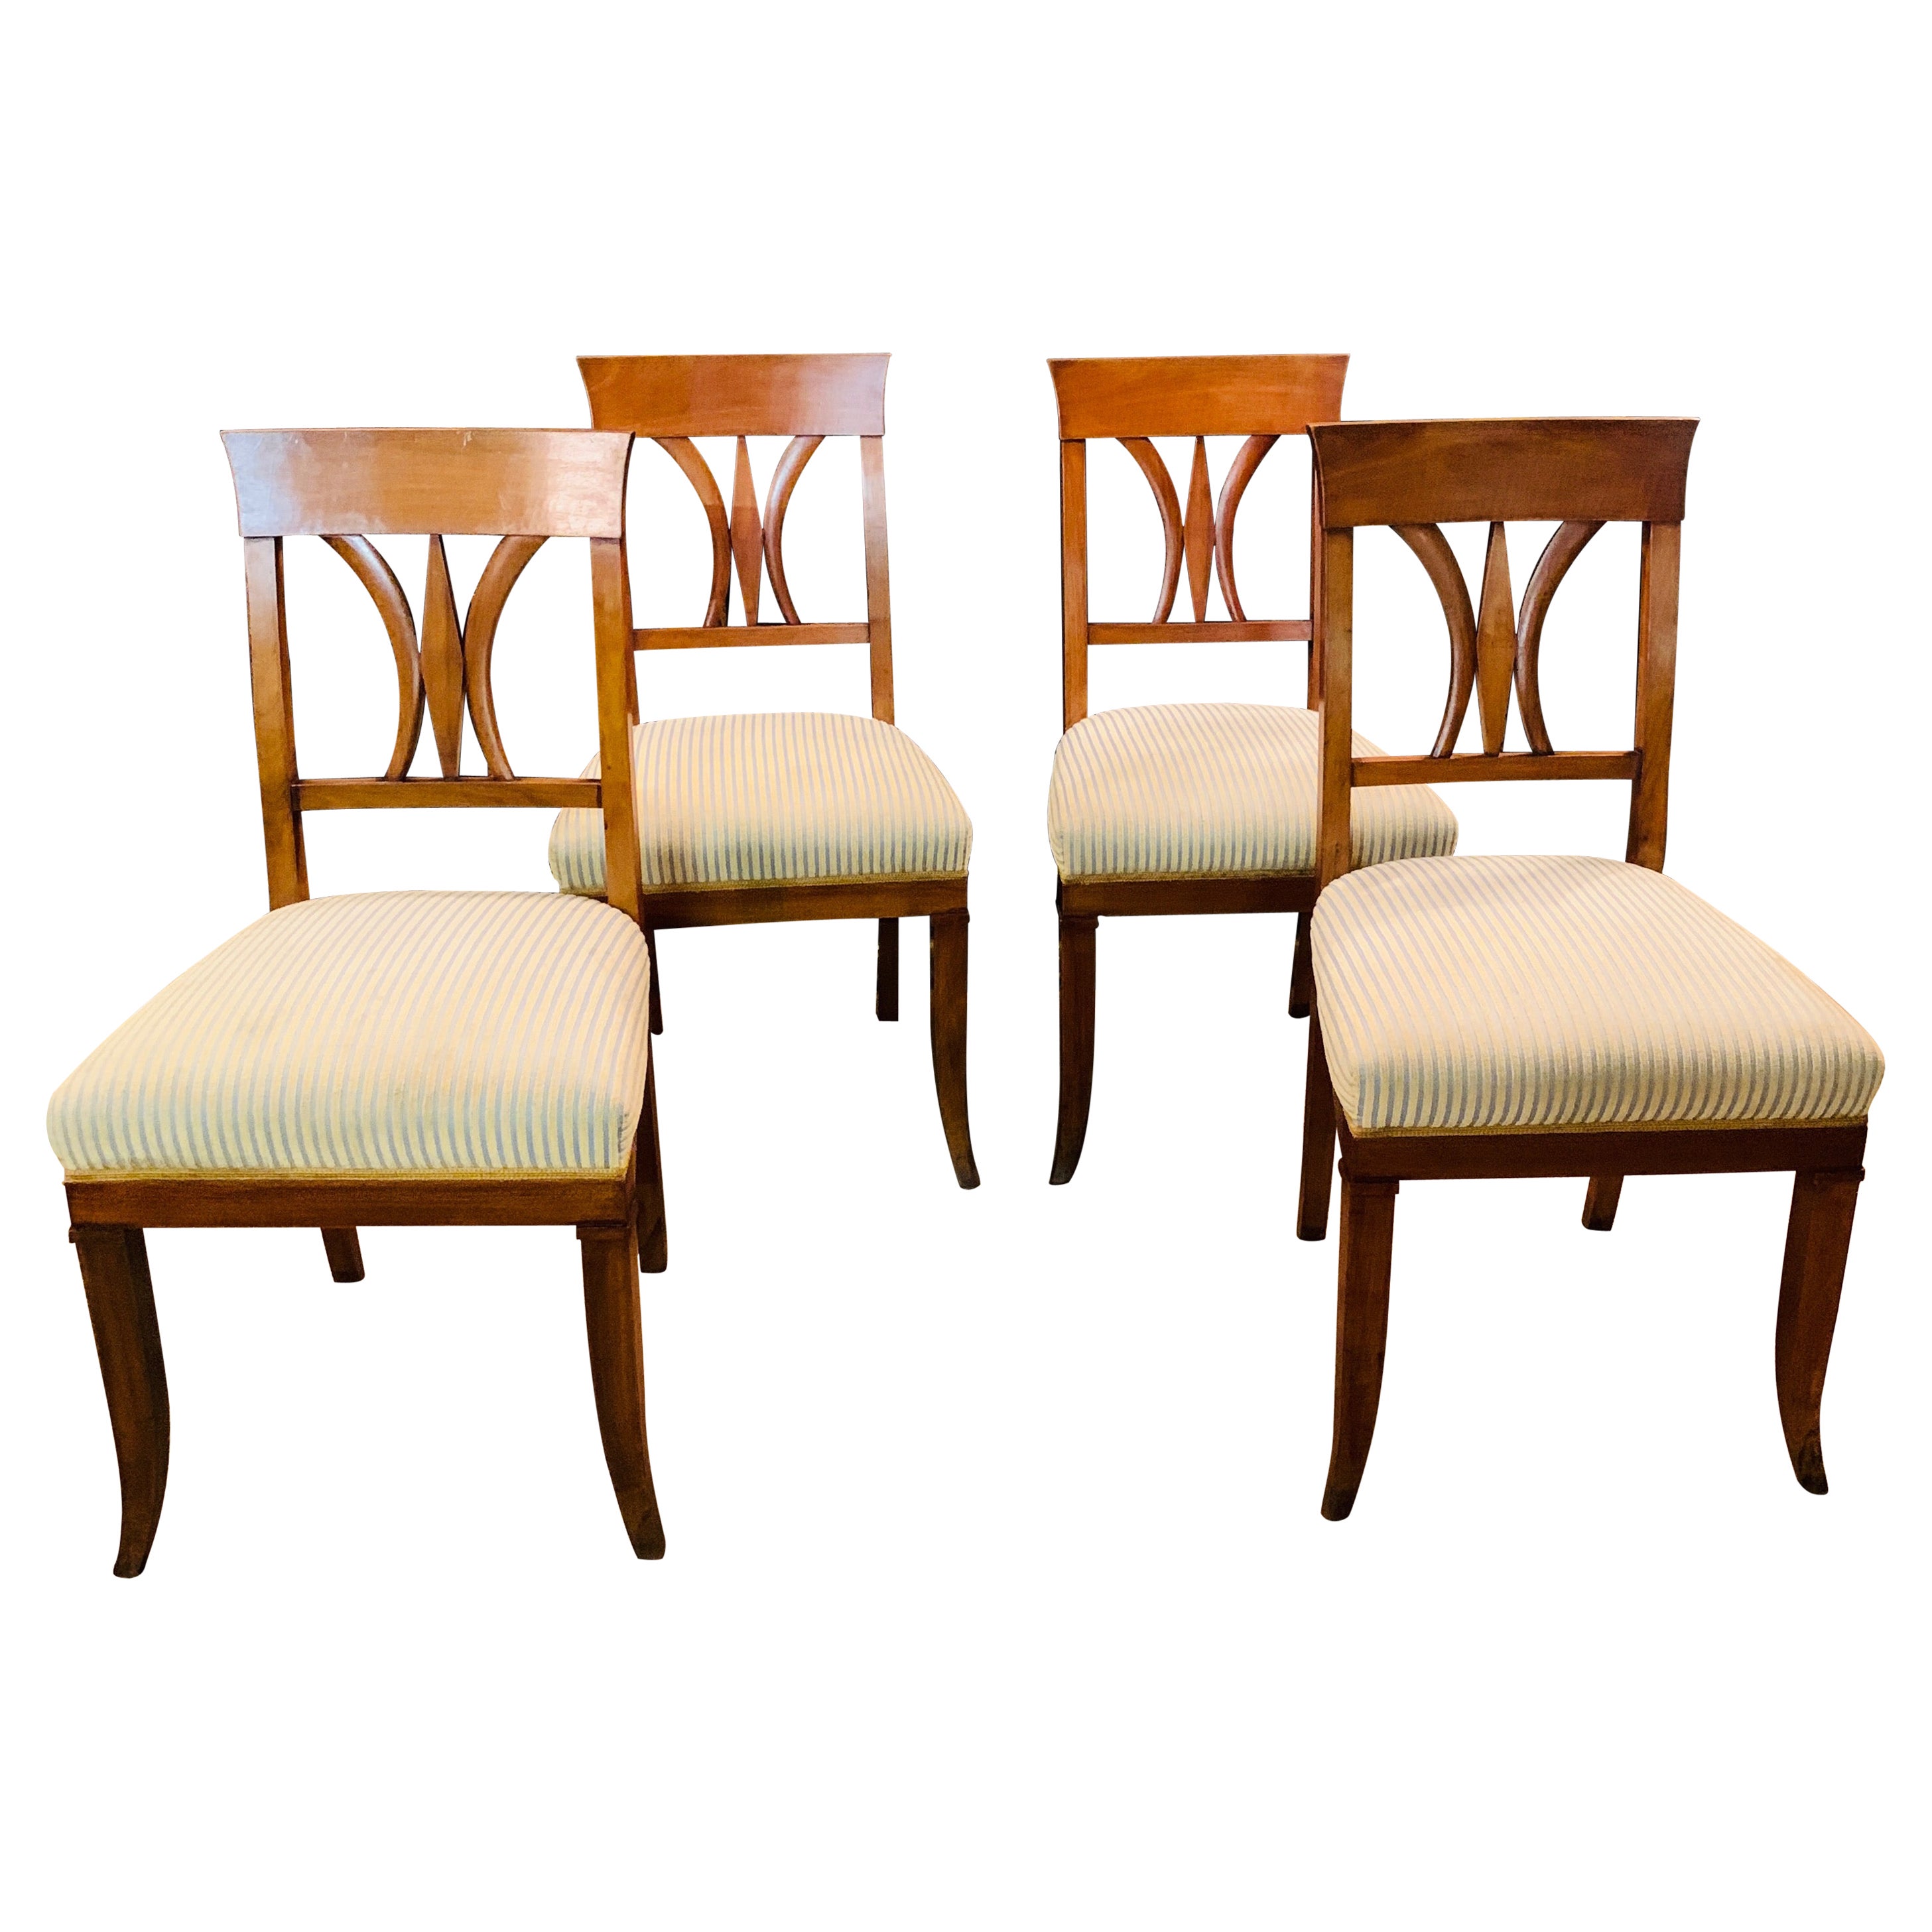 Satz antiker Biedermeier-Stühle aus Kirschbaumholz, 19. Jahrhundert, 1820 